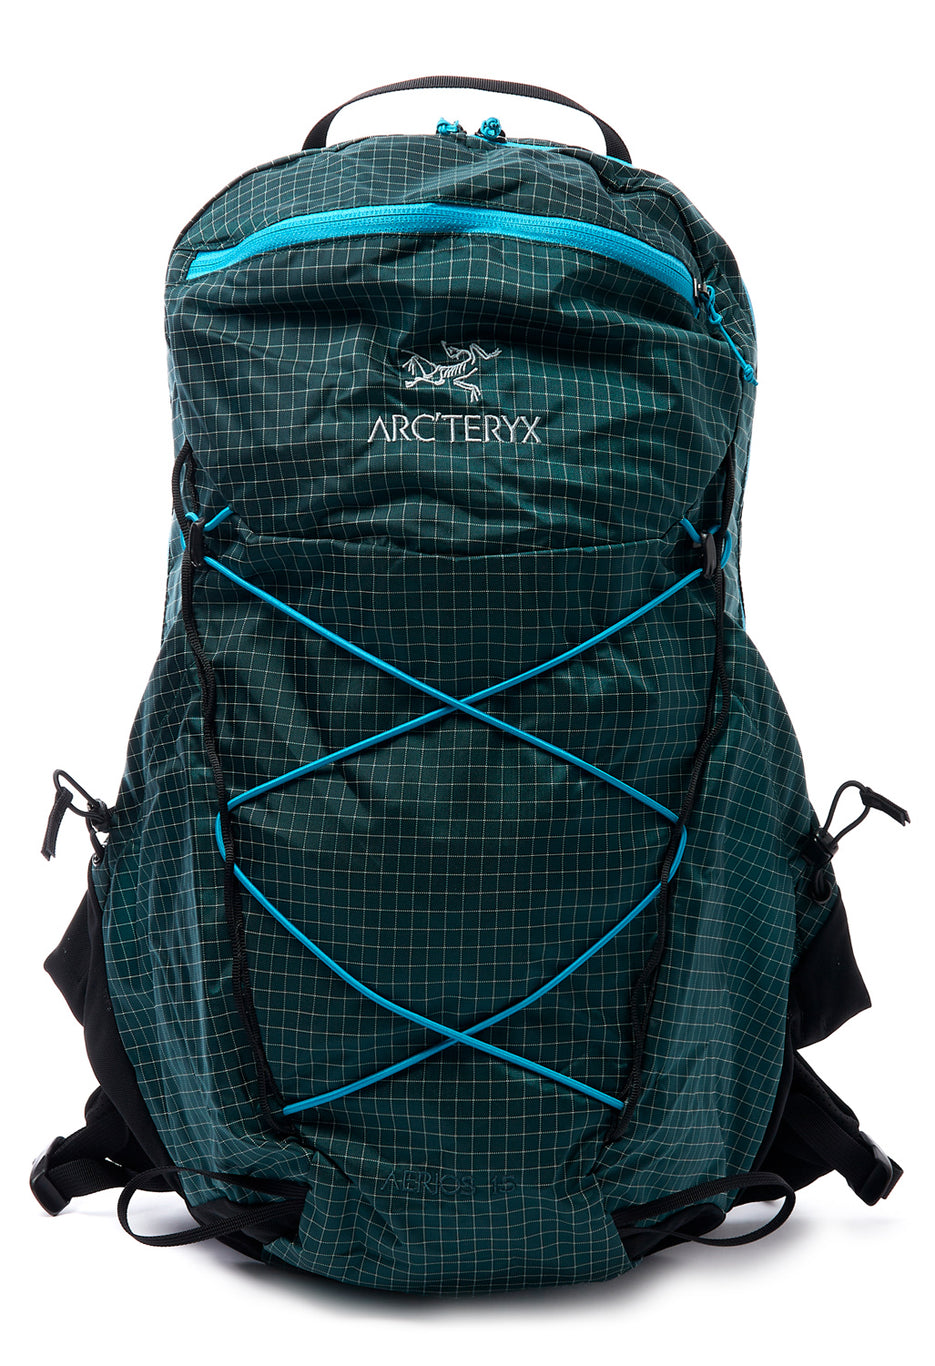 Arc'teryx Aerios 15 Backpack - Pytheas